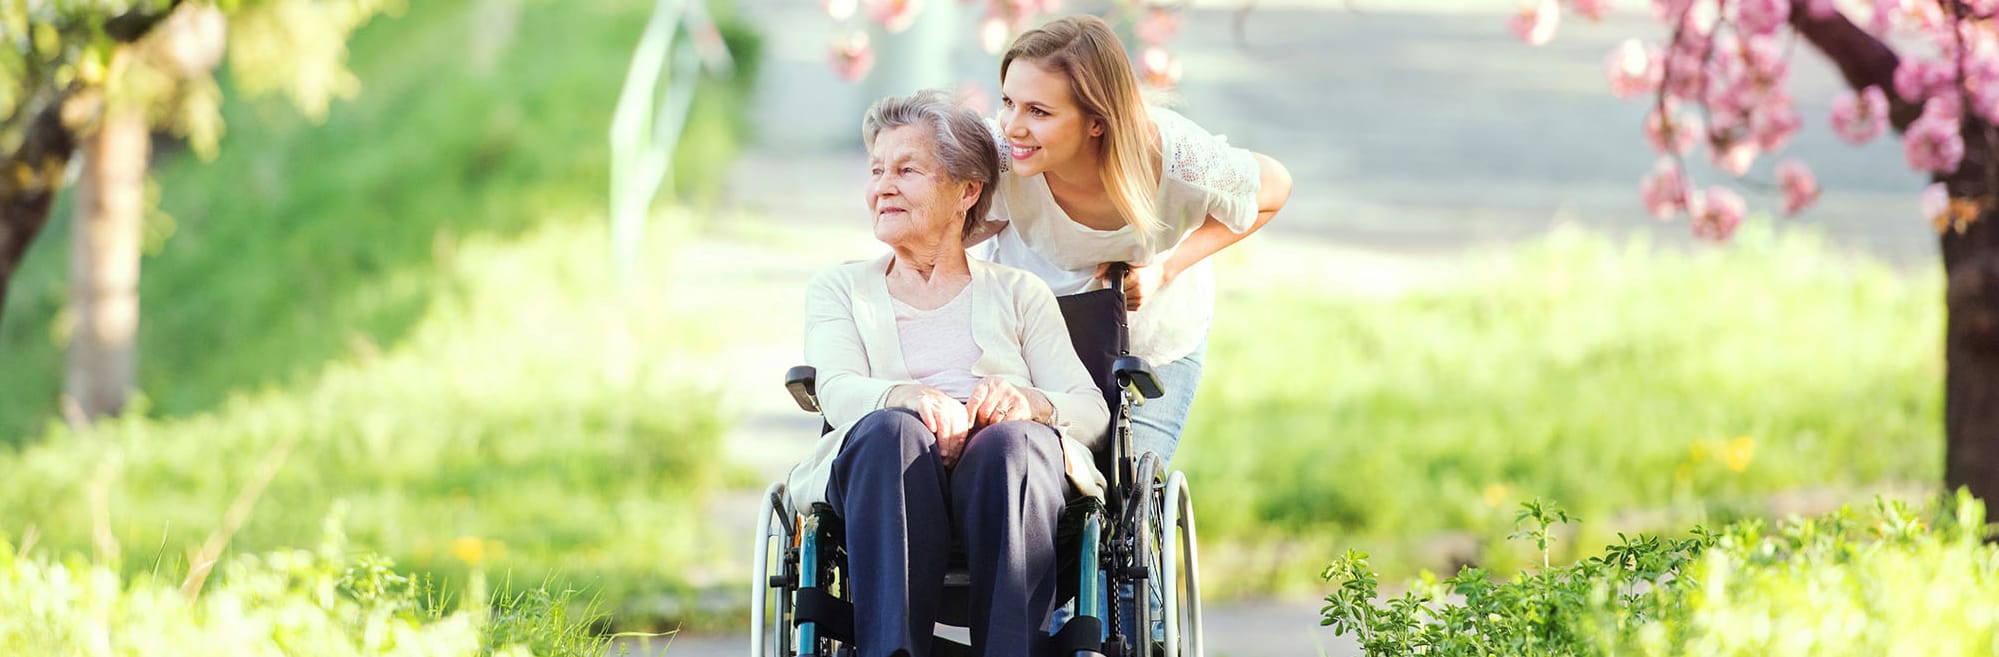 Betreuungskraft schiebt eine alte Dame im Rollstuhl